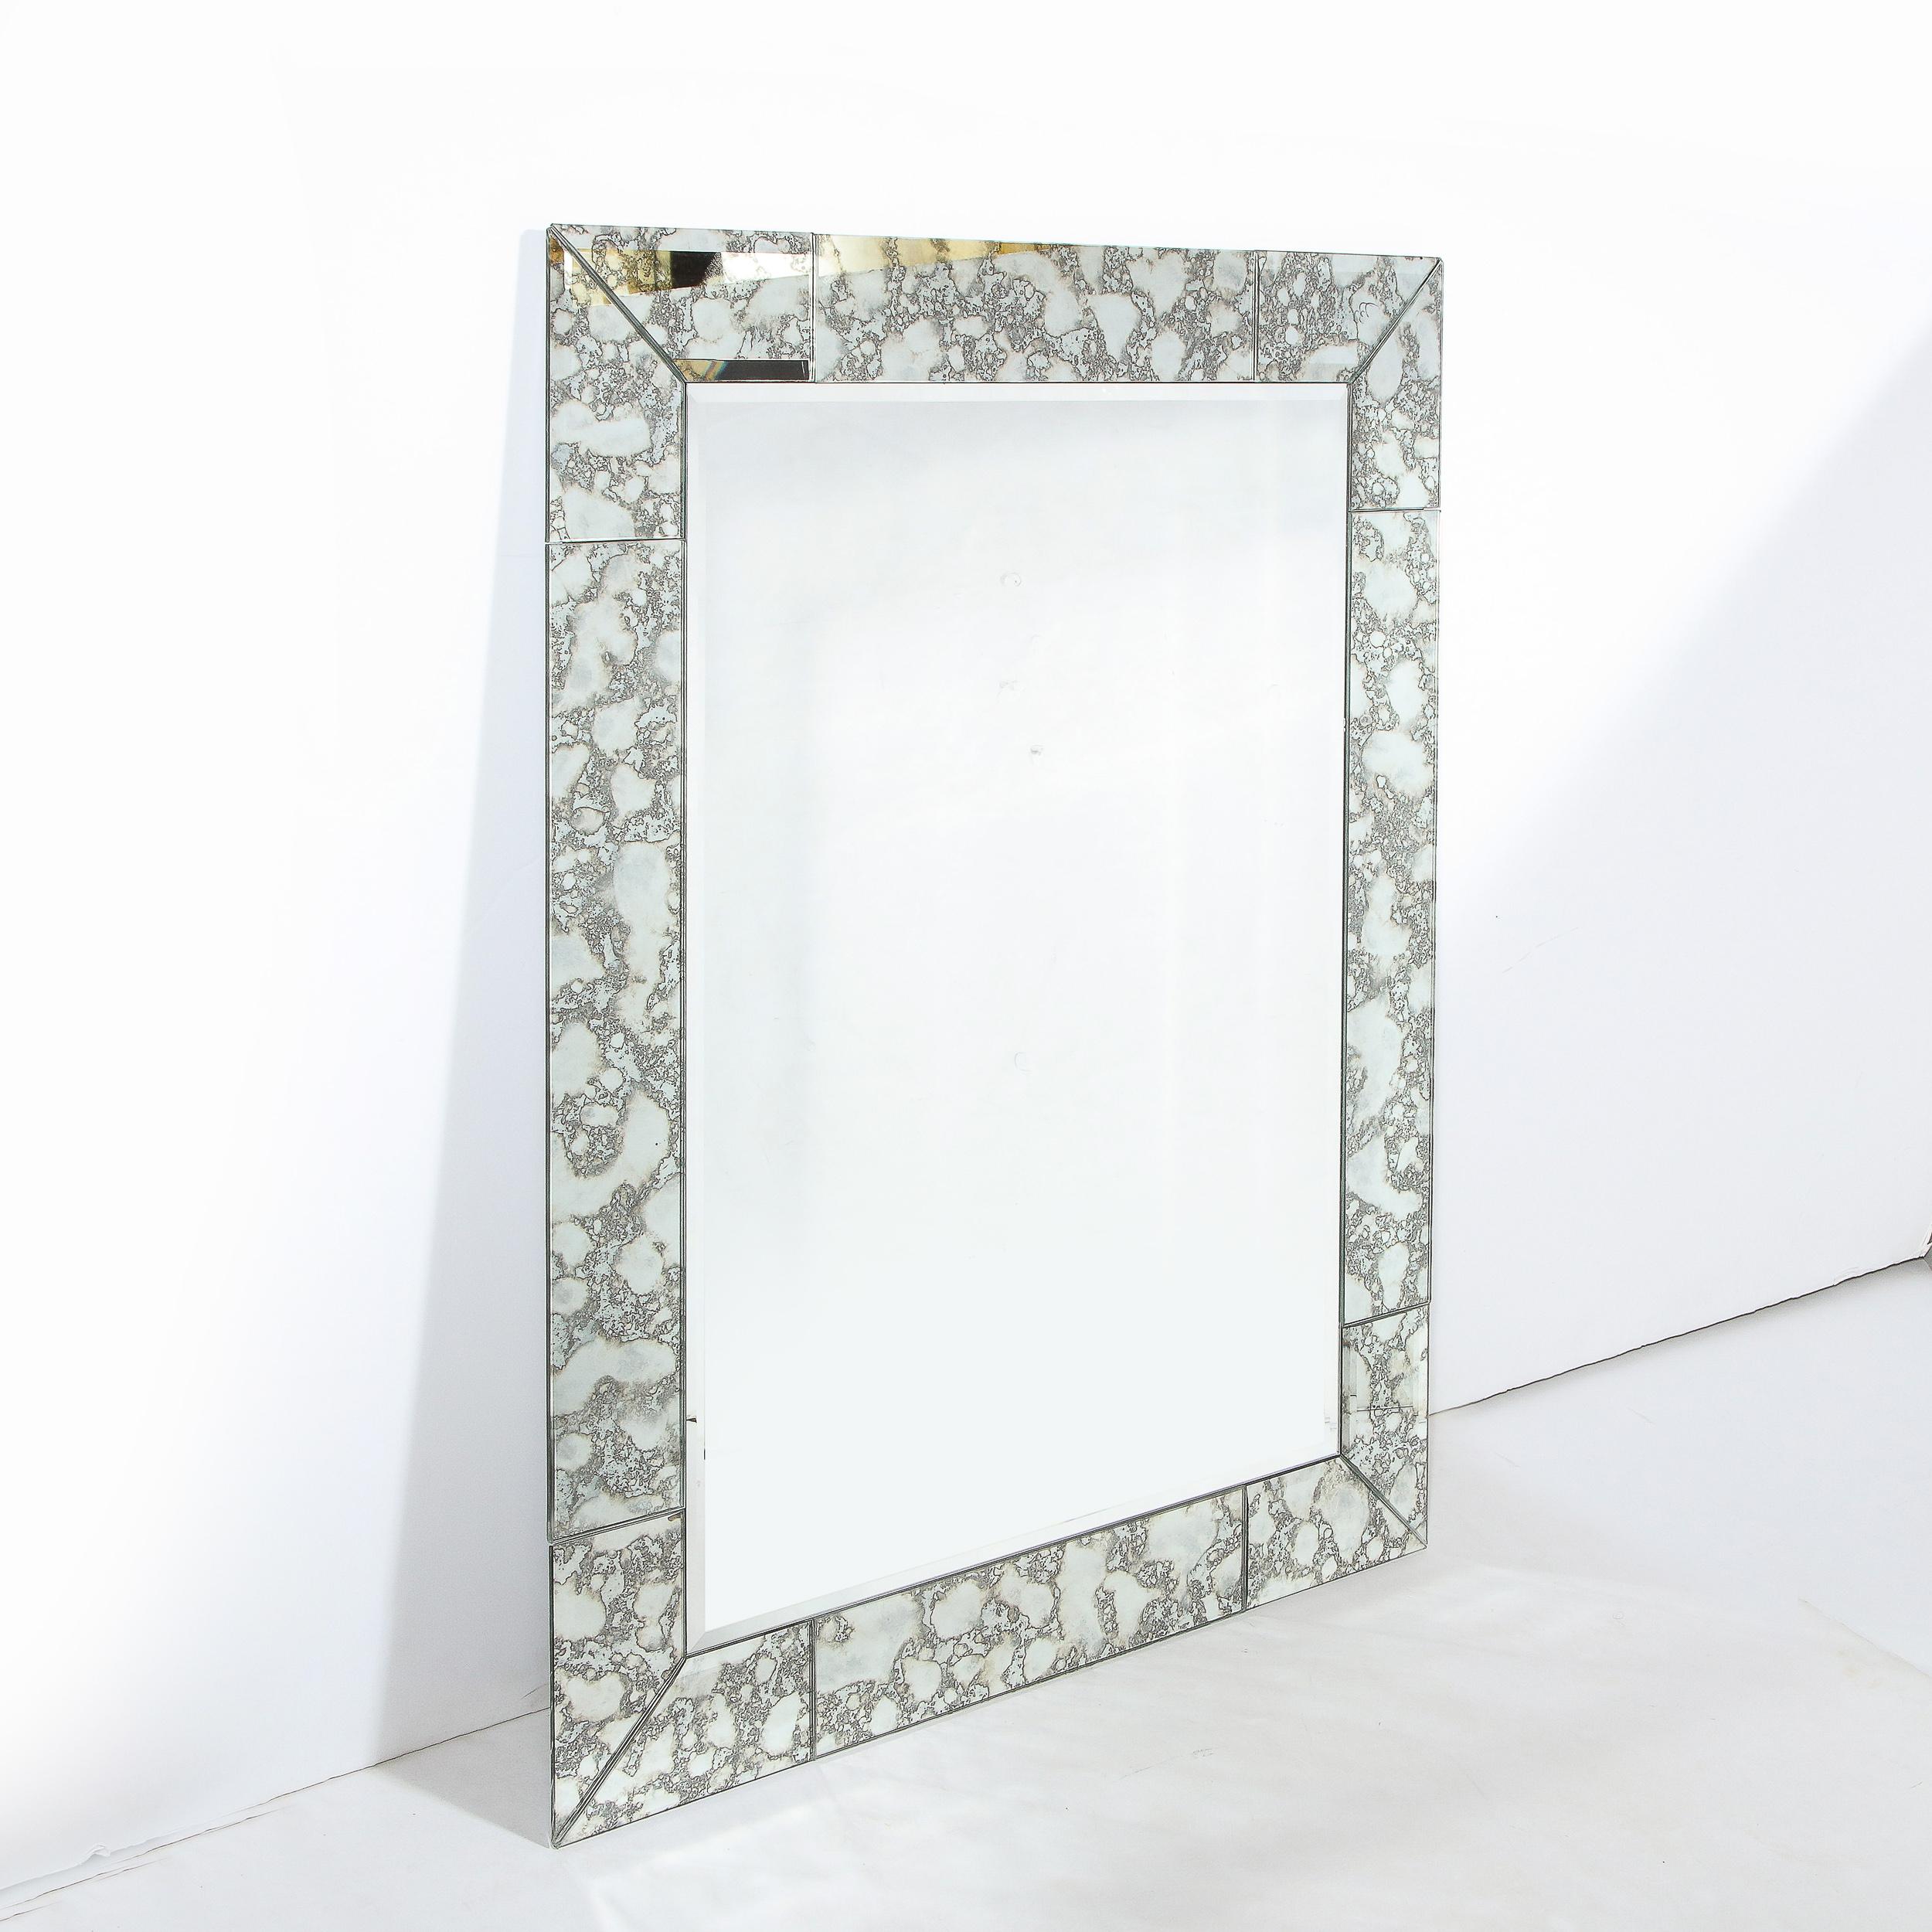 Ce superbe miroir moderne et personnalisable a été réalisé aux États-Unis. Il présente une forme rectangulaire avec une bordure tessellée composée de segments rectilignes en miroir avec des bords biseautés qui s'enroulent autour du périmètre de la